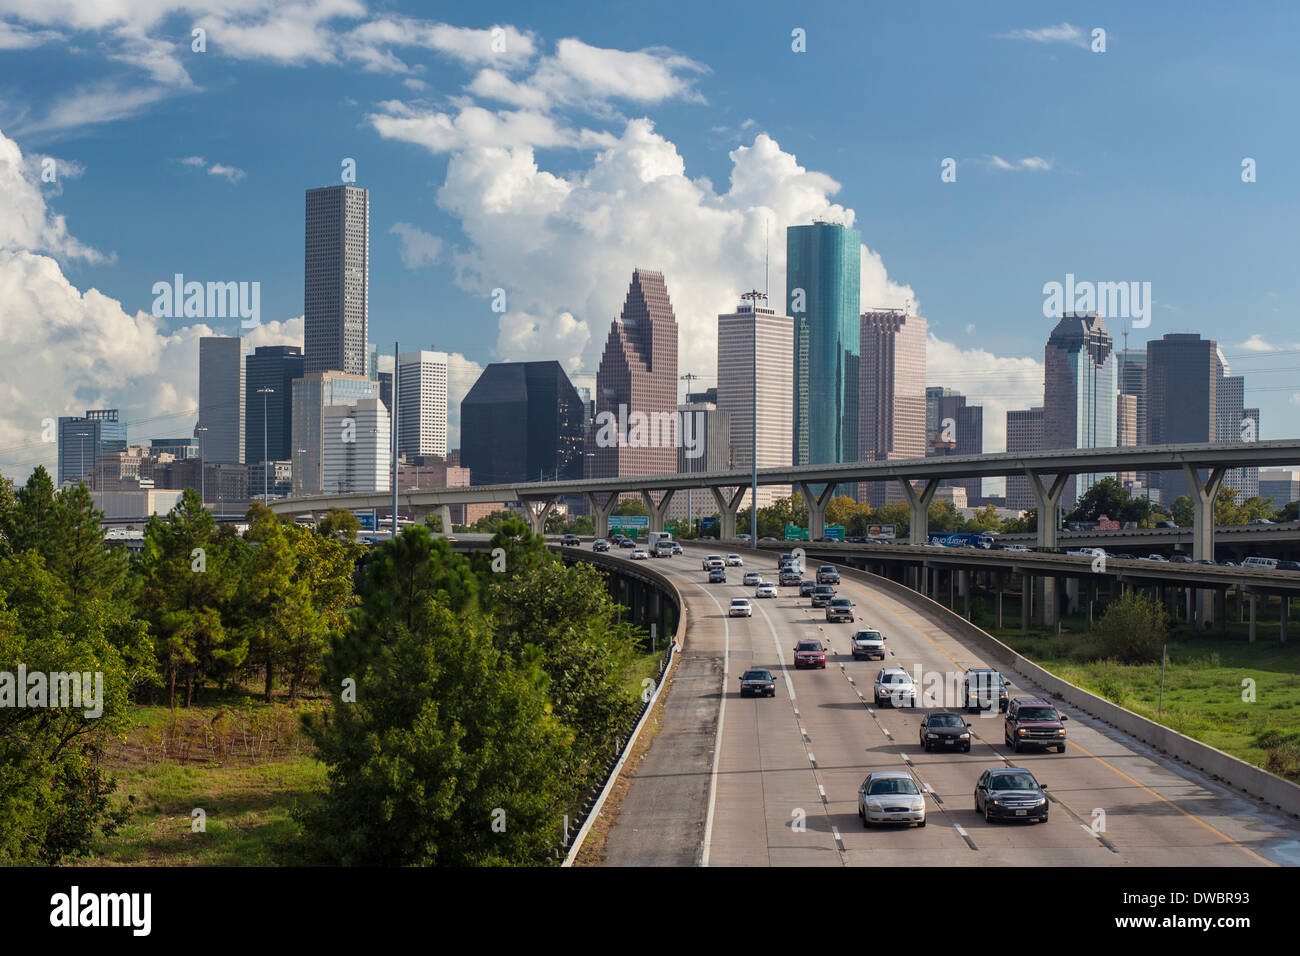 Sur les toits de la ville, Houston, Texas, États-Unis d'Amérique Banque D'Images